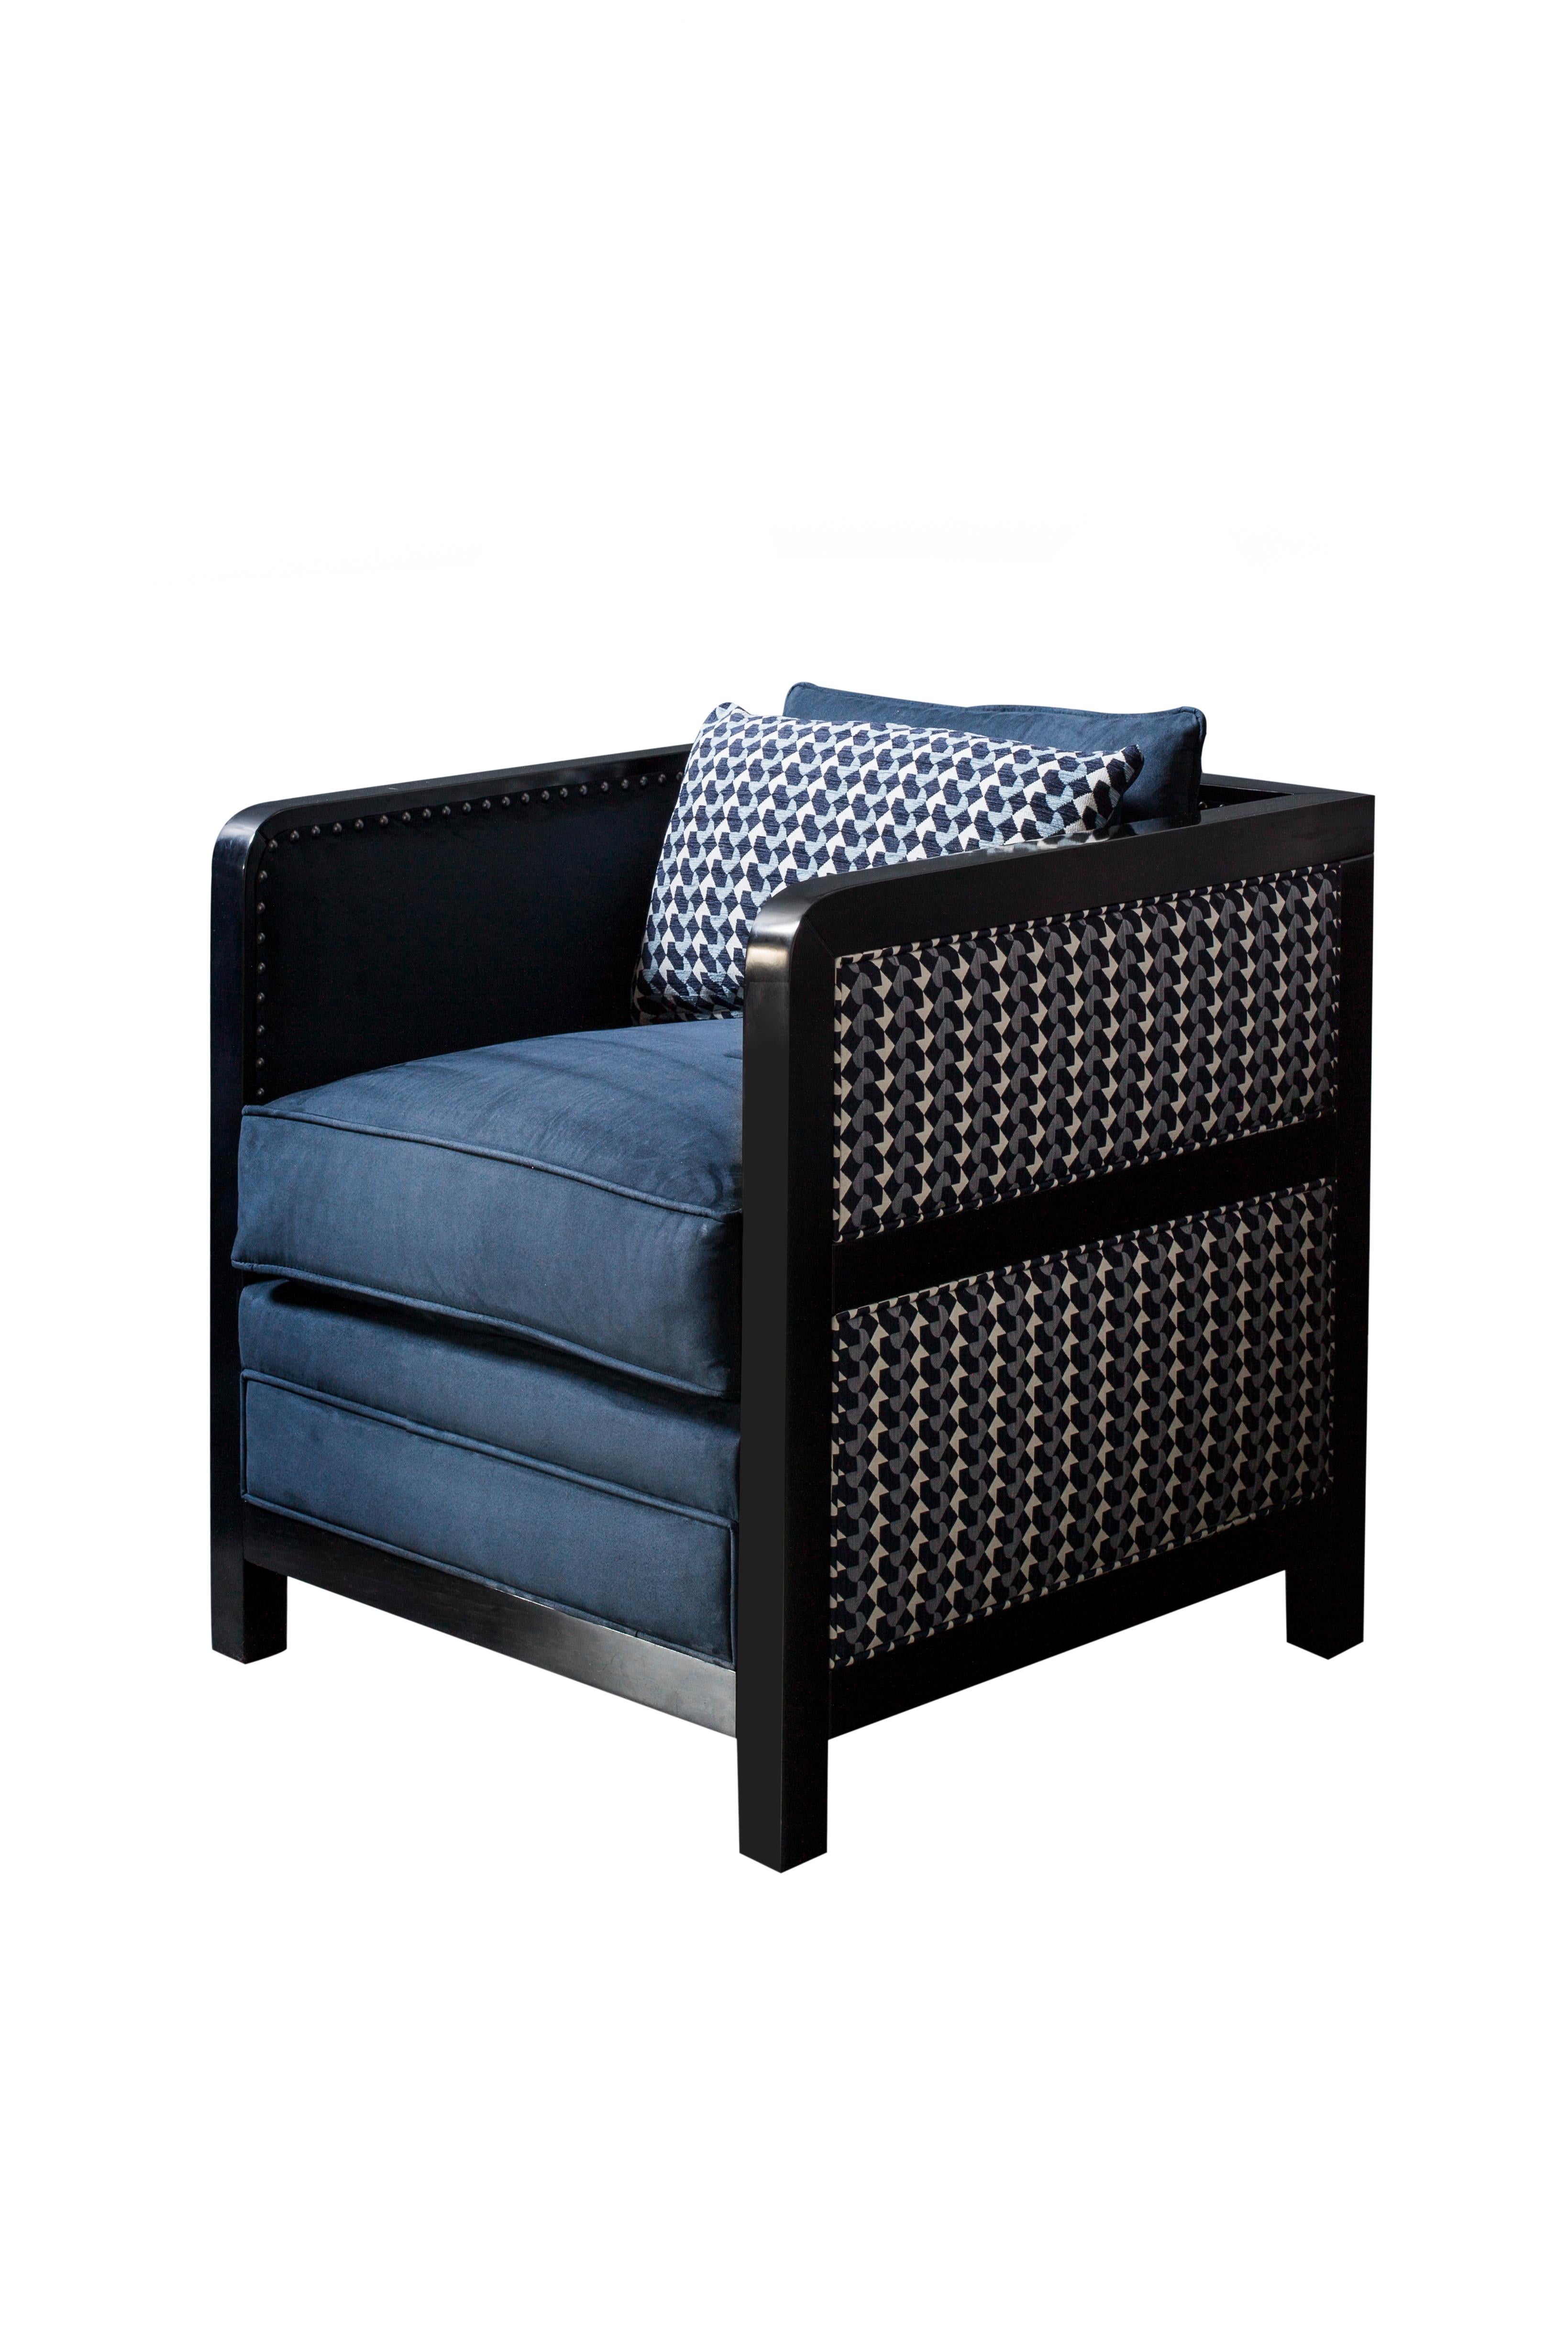 Totalement digne d'un salon, le fauteuil Bacco est un remodelage contemporain de l'iconique fauteuil boxy.

Repoussant les limites du design et jouant avec différentes textures et finitions, le fauteuil déconstruit Boxy Bacco mélange le mat et le